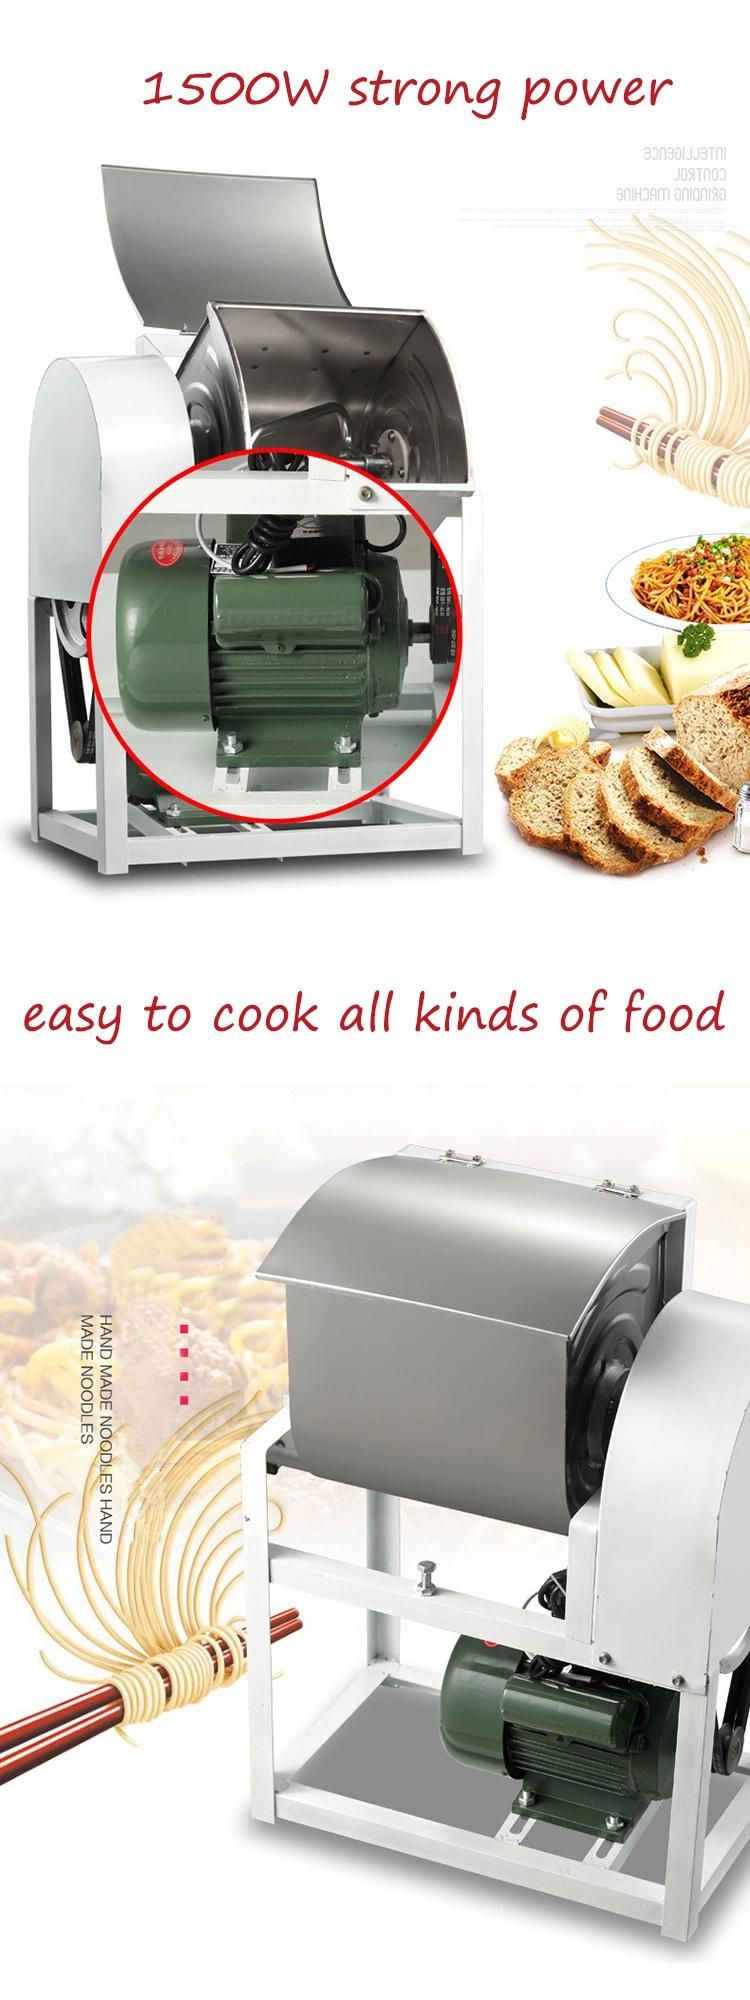 5kg, 15kg, 25kg Automatic Dough Mixer 220V Commercial Flour Mixer Stirring Mixer Pasta Bread Dough Kneading Machine